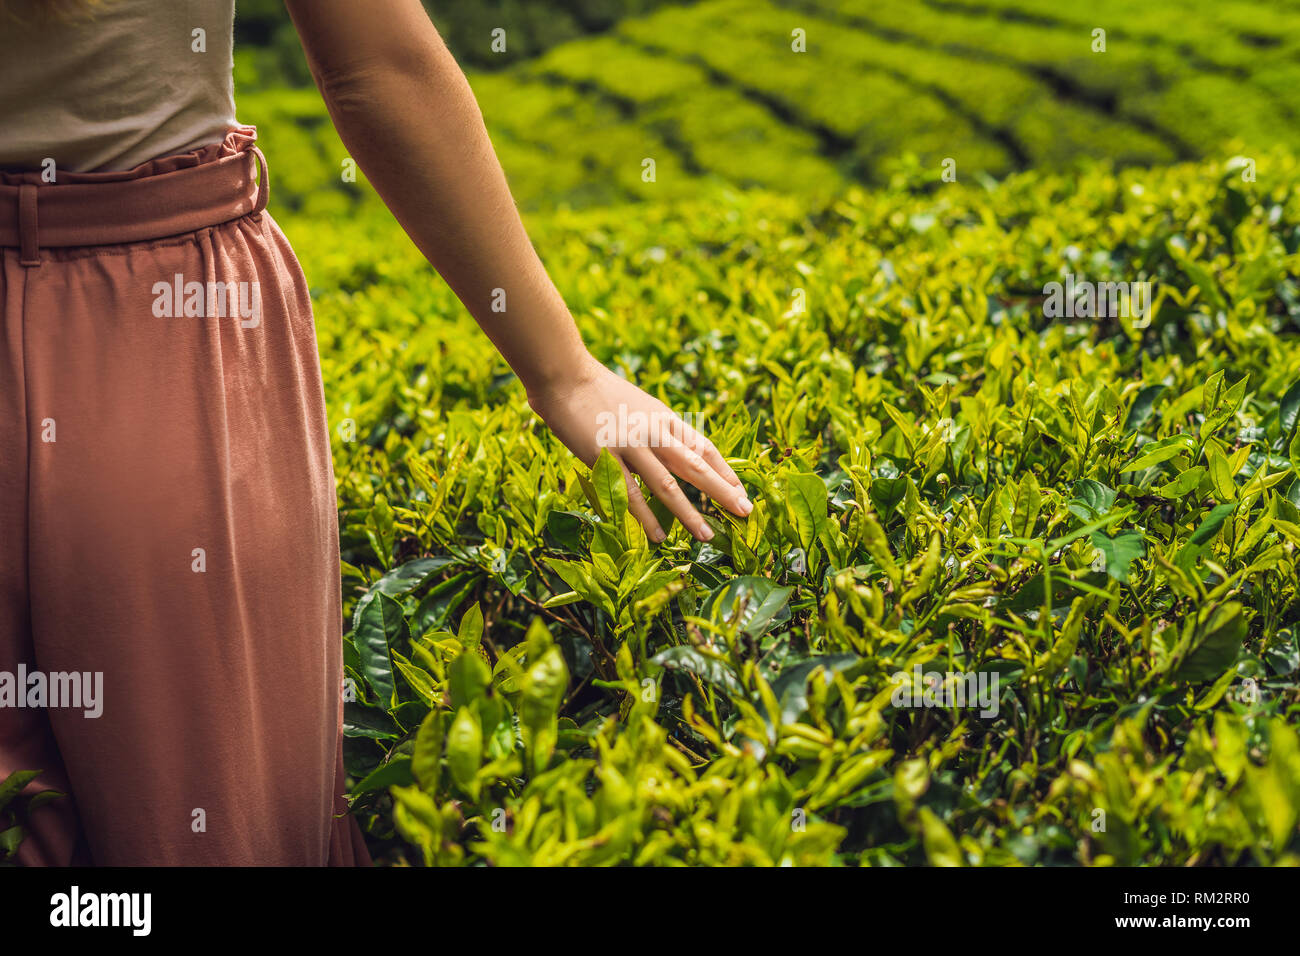 Tourisme des femmes dans une plantation de thé. Sélectionné naturel, de feuilles de thé fraîches dans la ferme de thé en Cameron Highlands, Malaisie. Concept d'Écotourisme Banque D'Images